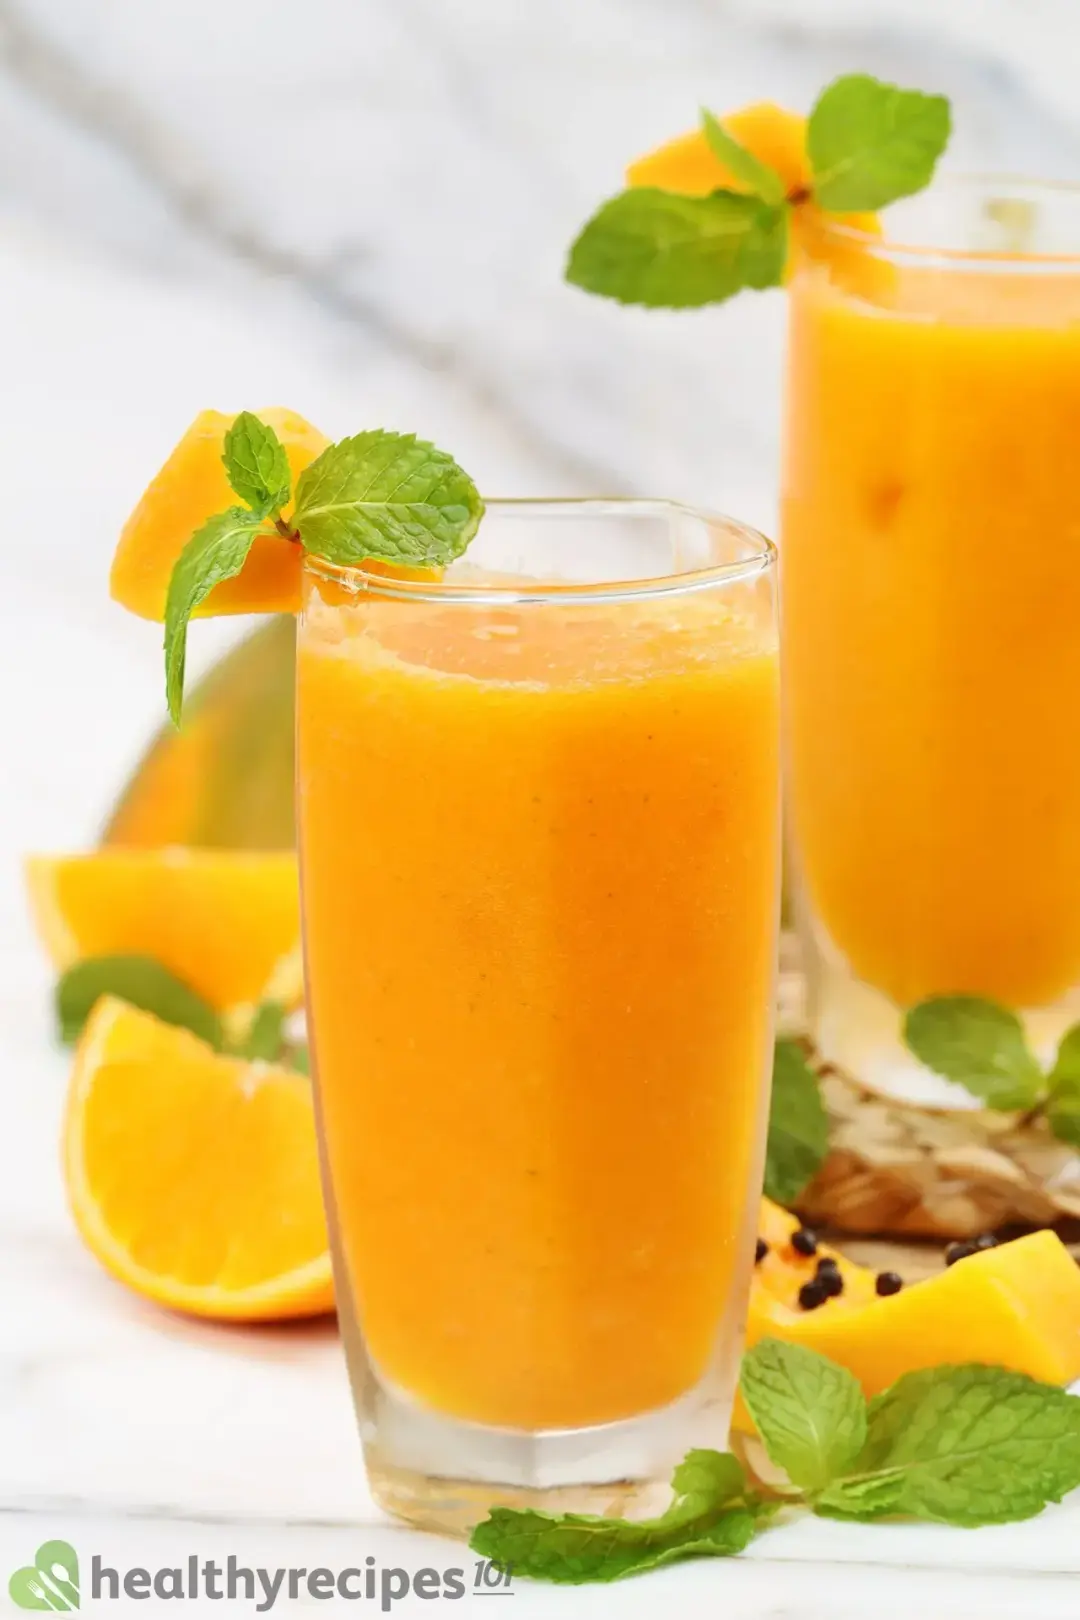 Benefits of Papaya Juice